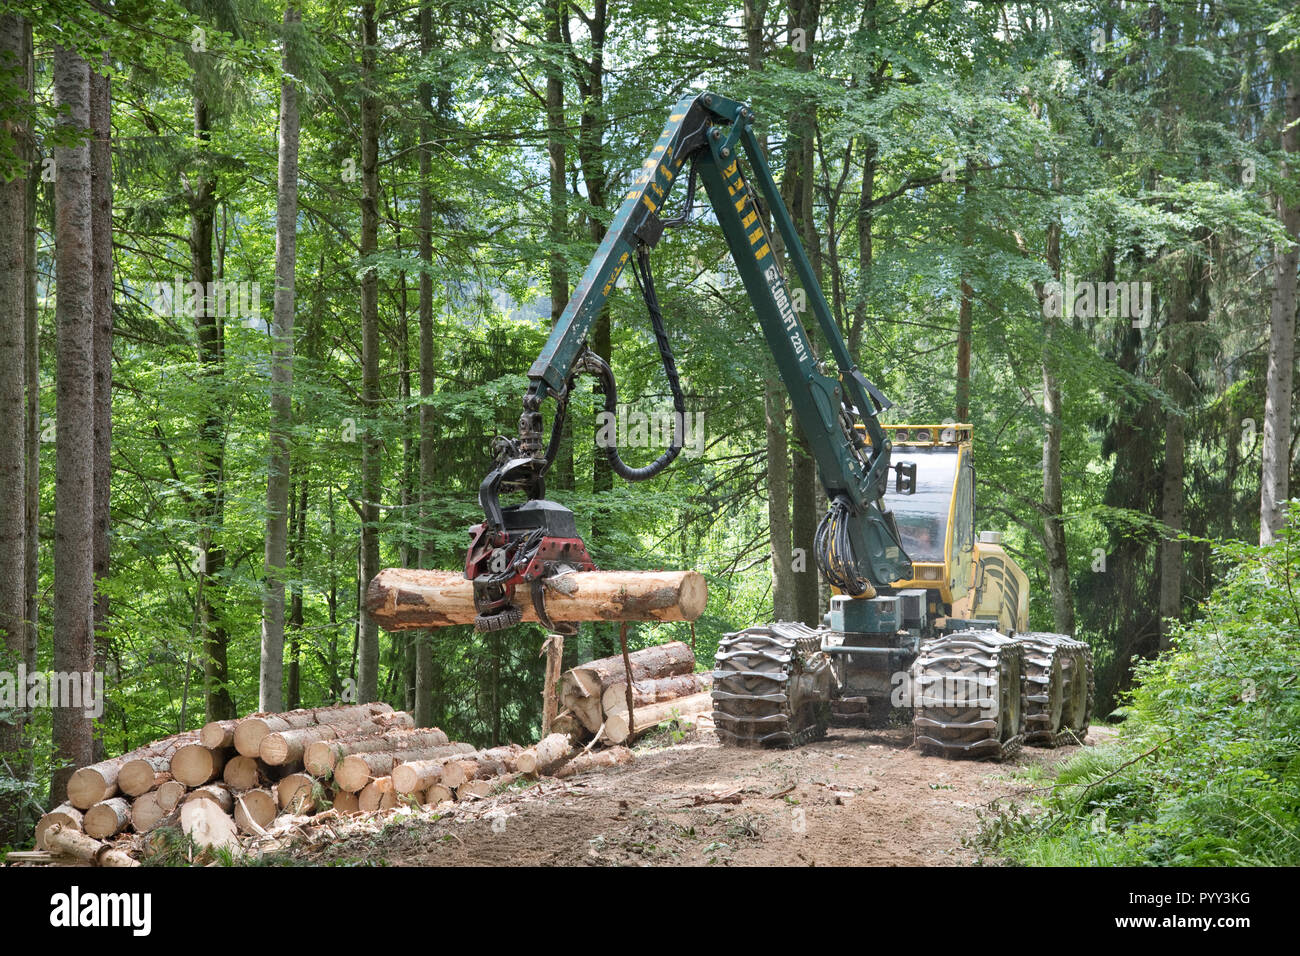 Harvester used for forestry work, Reichraming, Kalkalpen National Park, Upper Austria, Austria Stock Photo